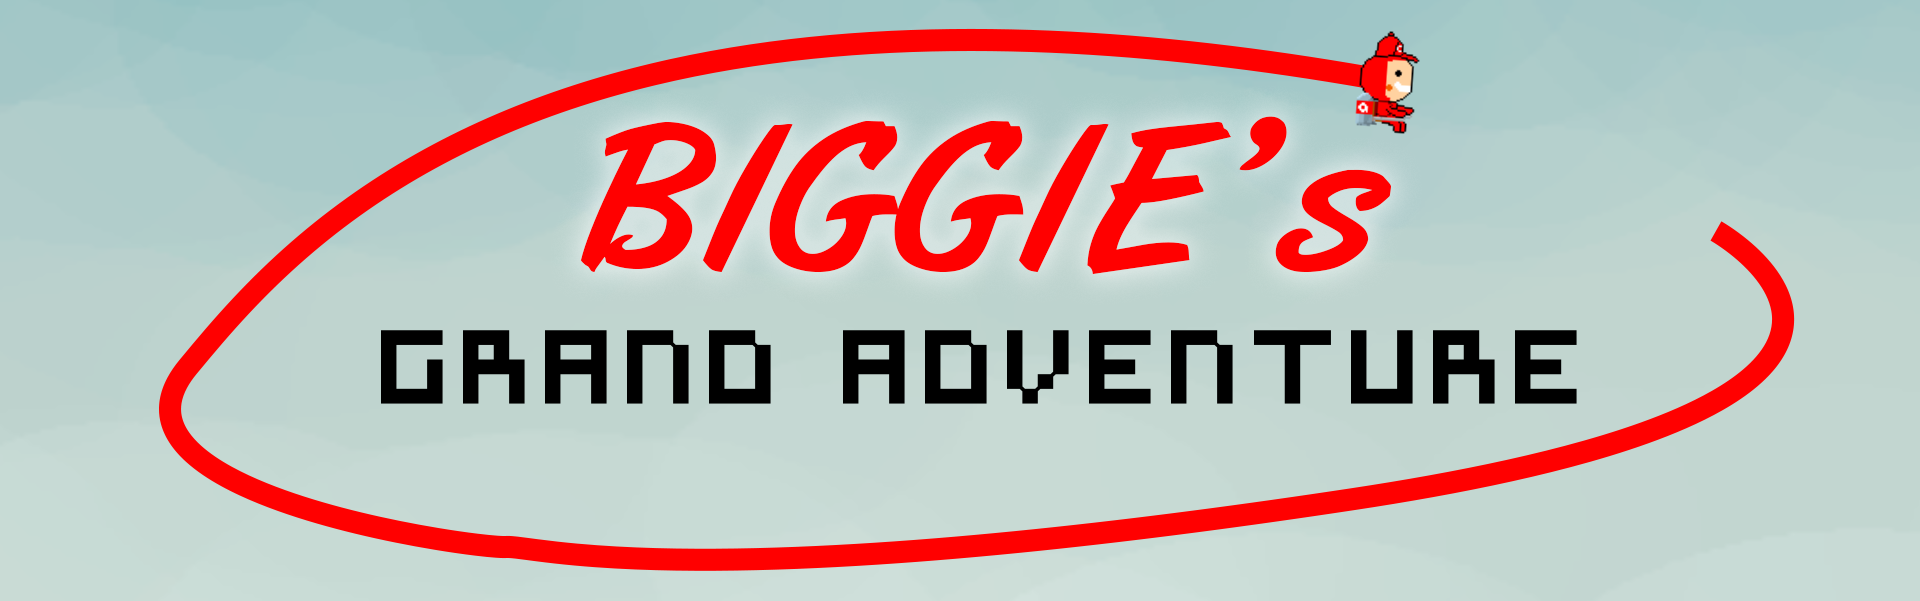 Biggie's Grand Adventure